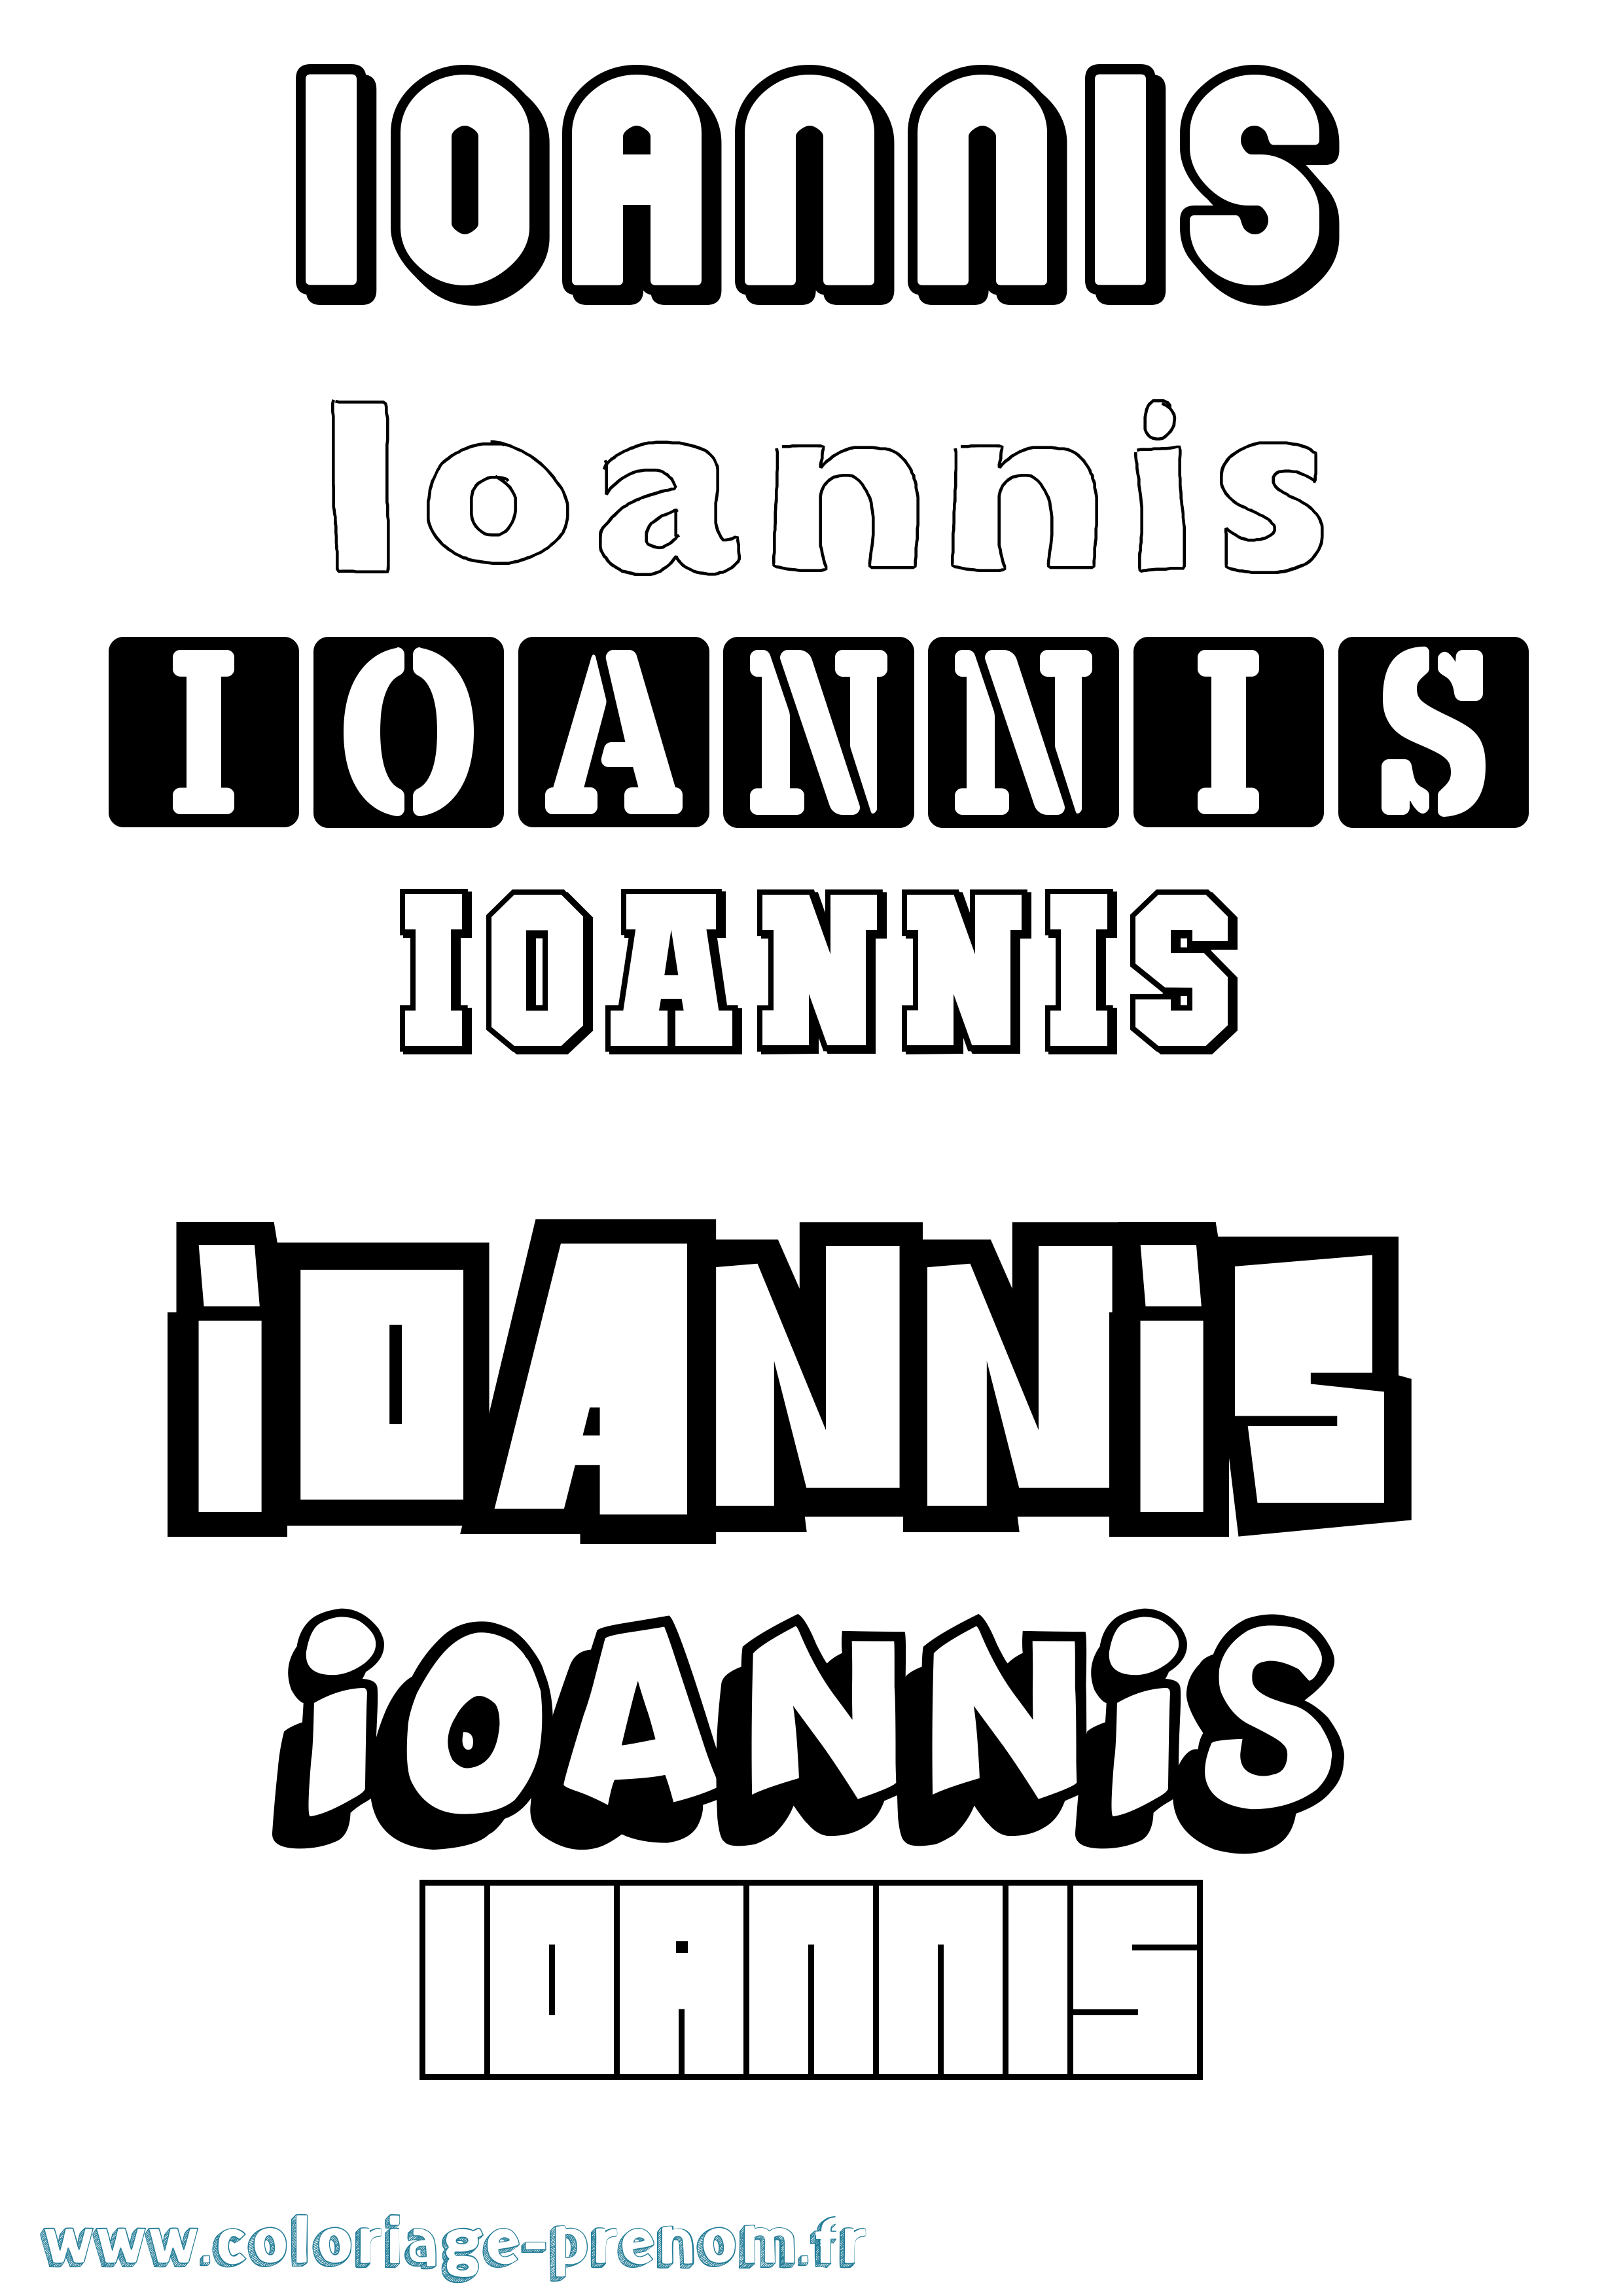 Coloriage prénom Ioannis Simple